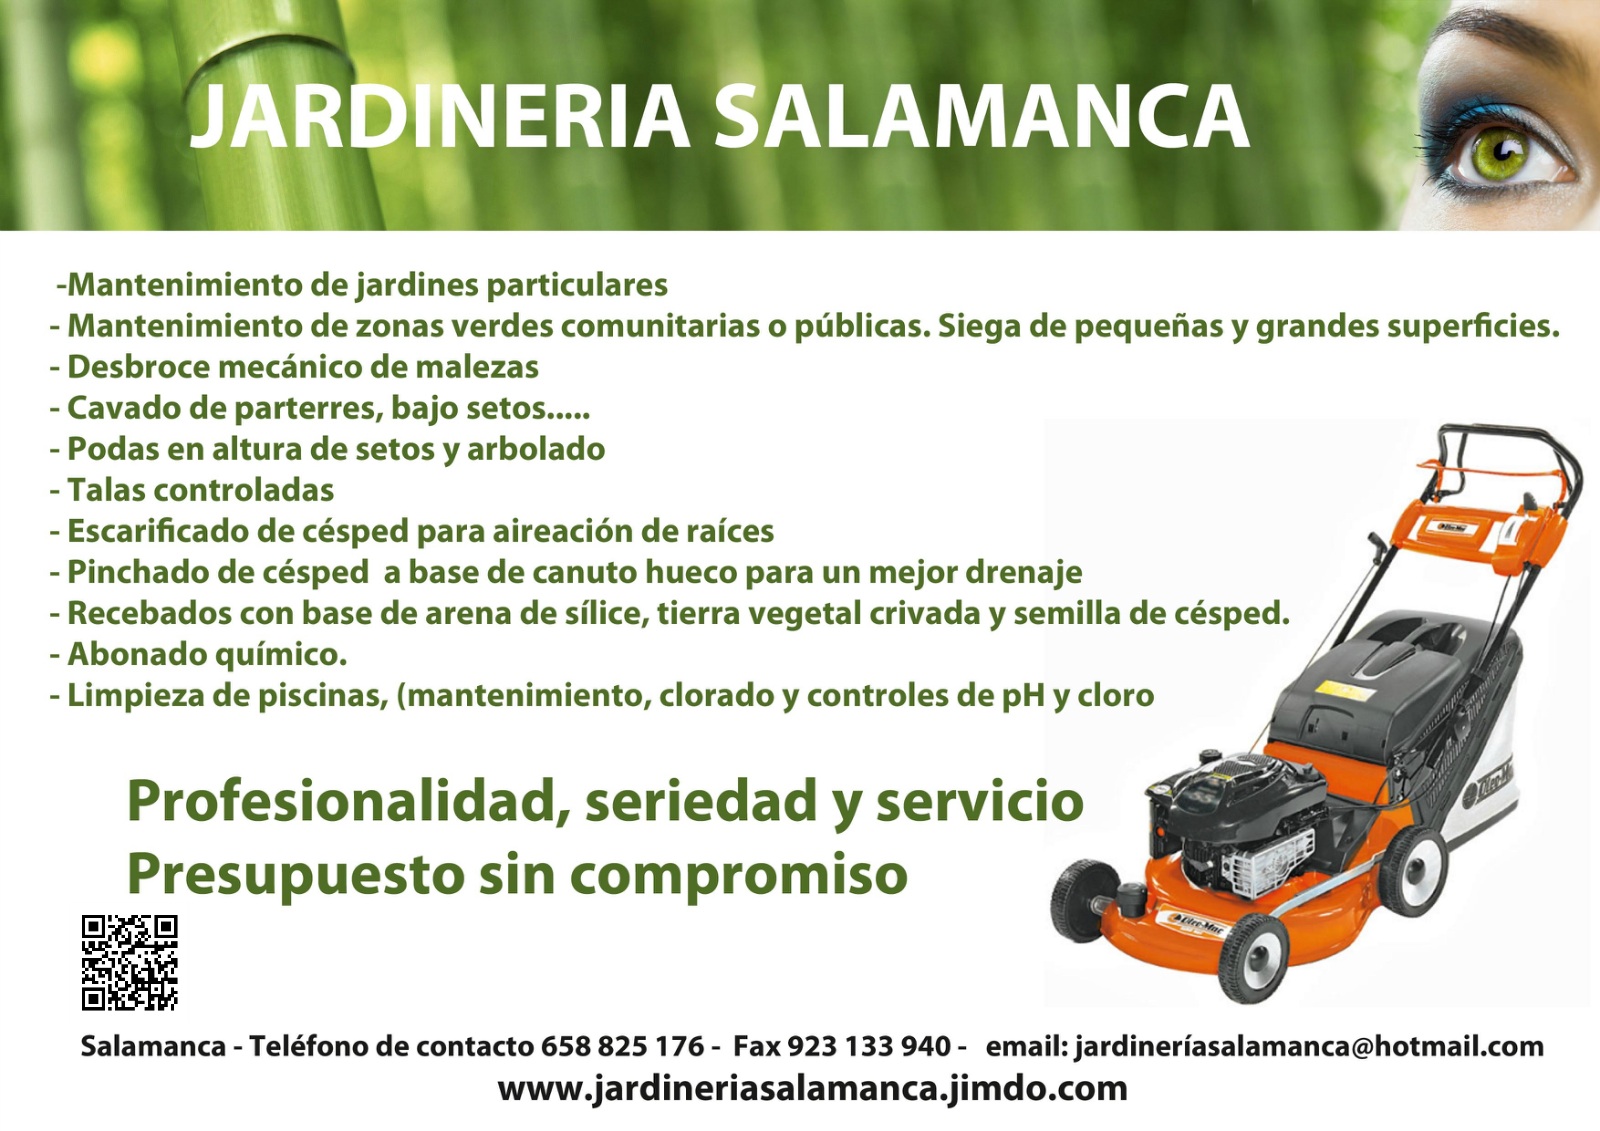 Jardinería Salamanca